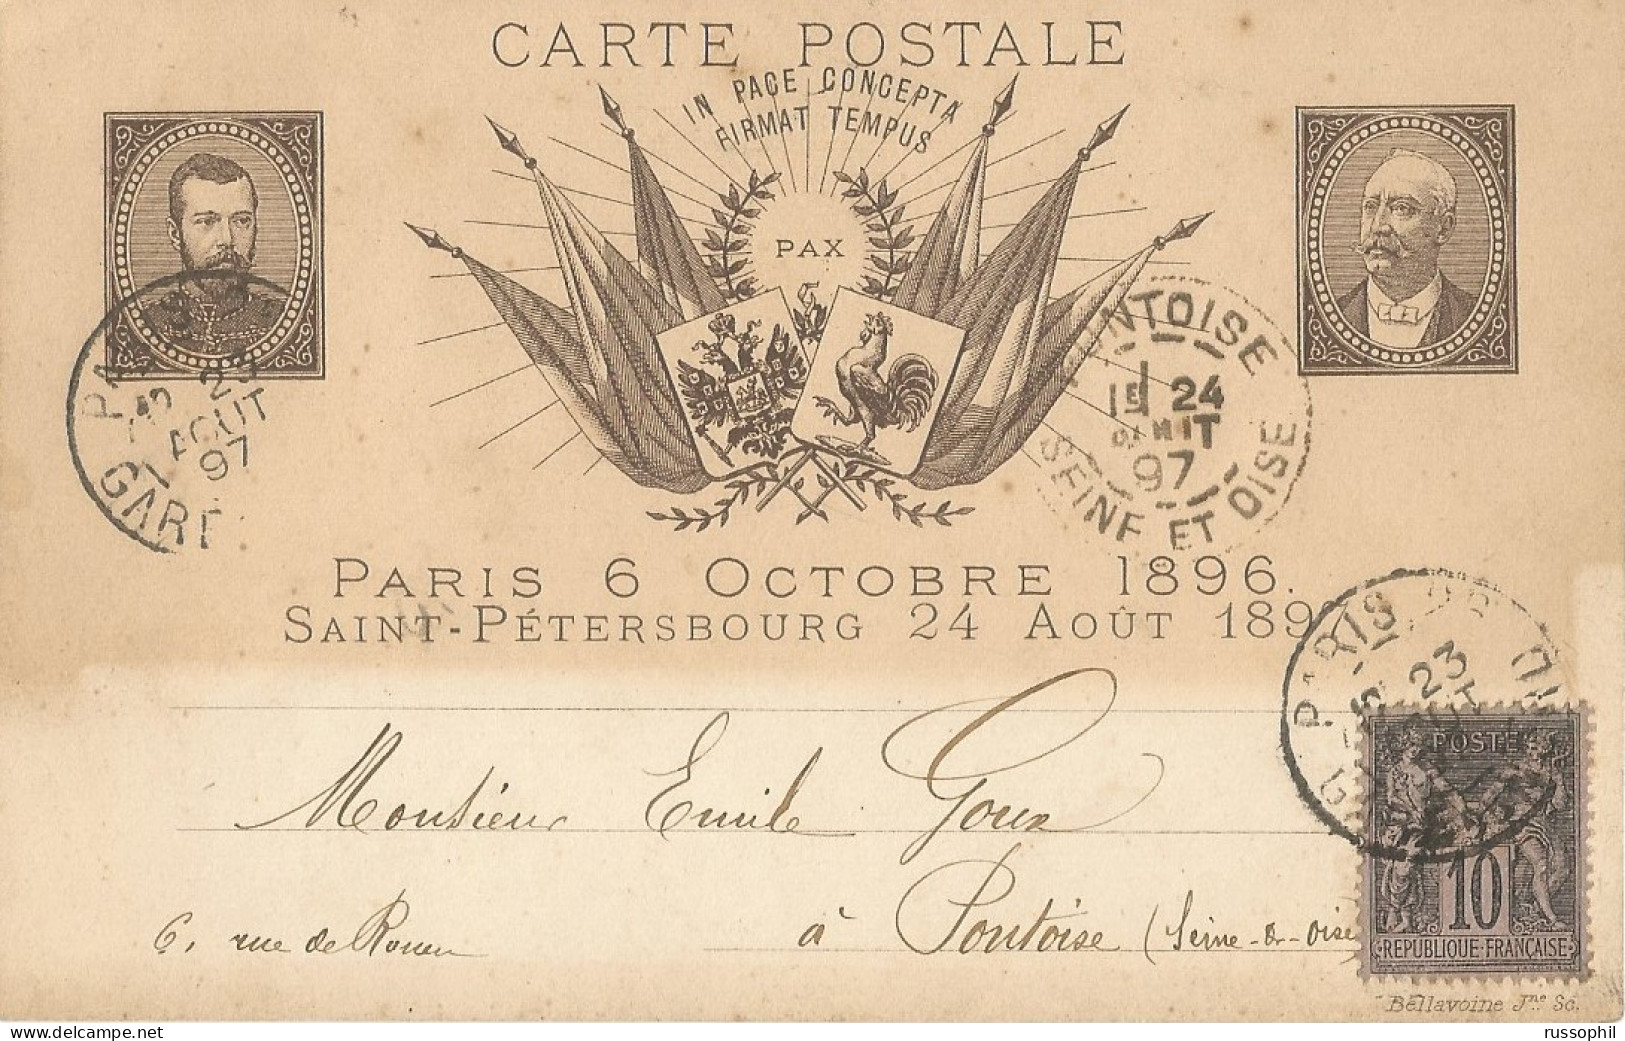 FRANCO RUSSIAN ALLIANCE - PARIS 6 OCTOBRE 1896 SAINT PETERSBOURG 24 AOUT 1897 - ED BELLAVOINE - 1897 - Eventos